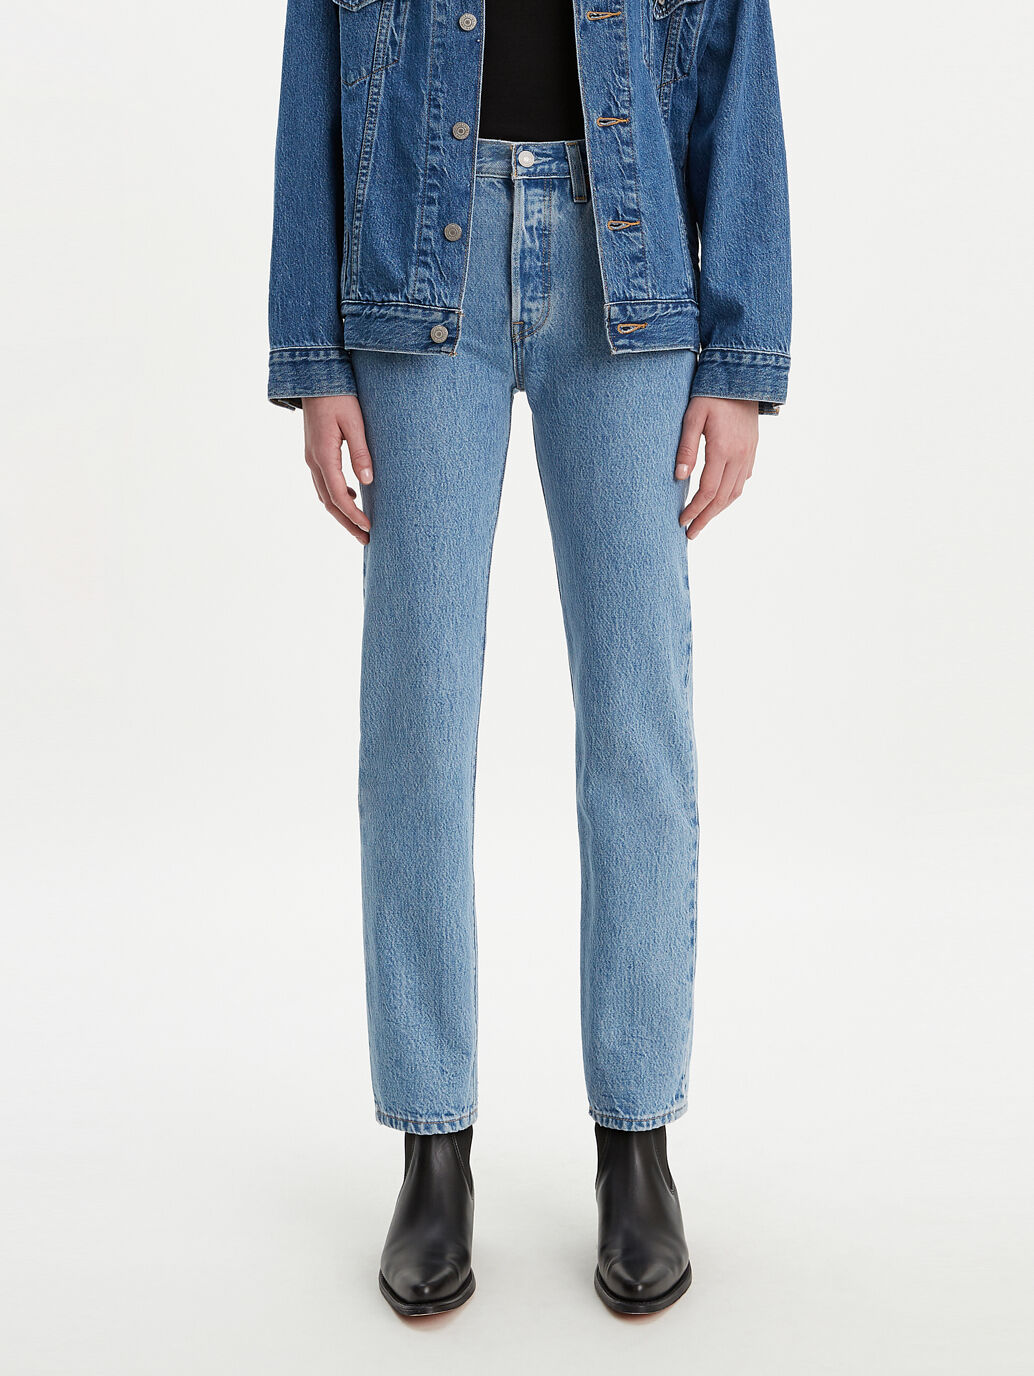 levis 101 jeans womens